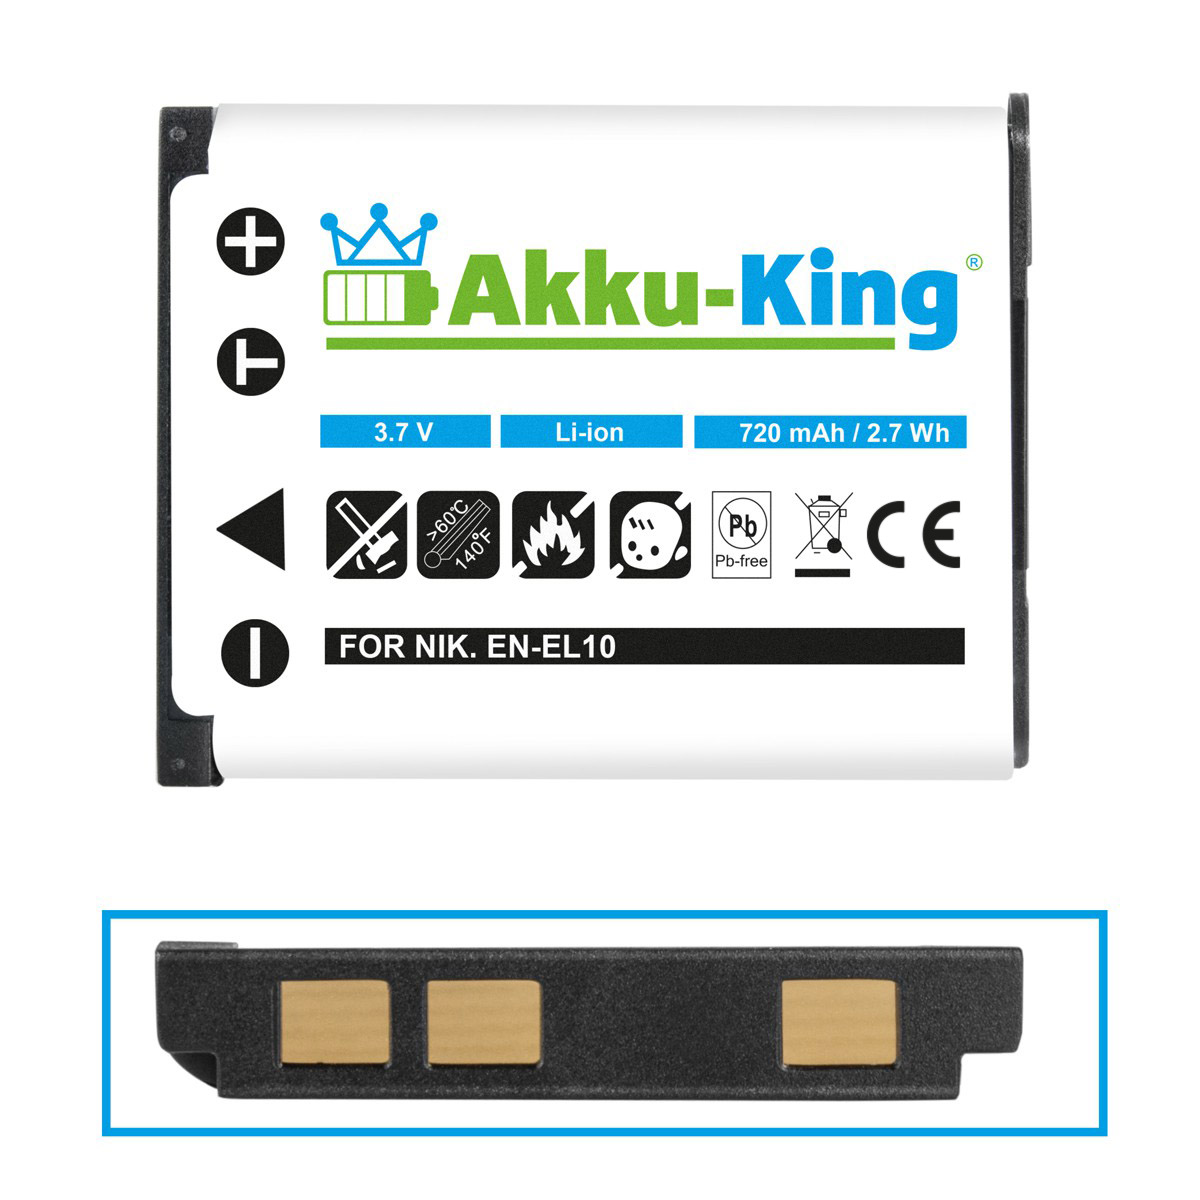 Li-Ion Akku Ricoh kompatibel DS-6365 Kamera-Akku, mit AKKU-KING 3.7 Volt, 720mAh